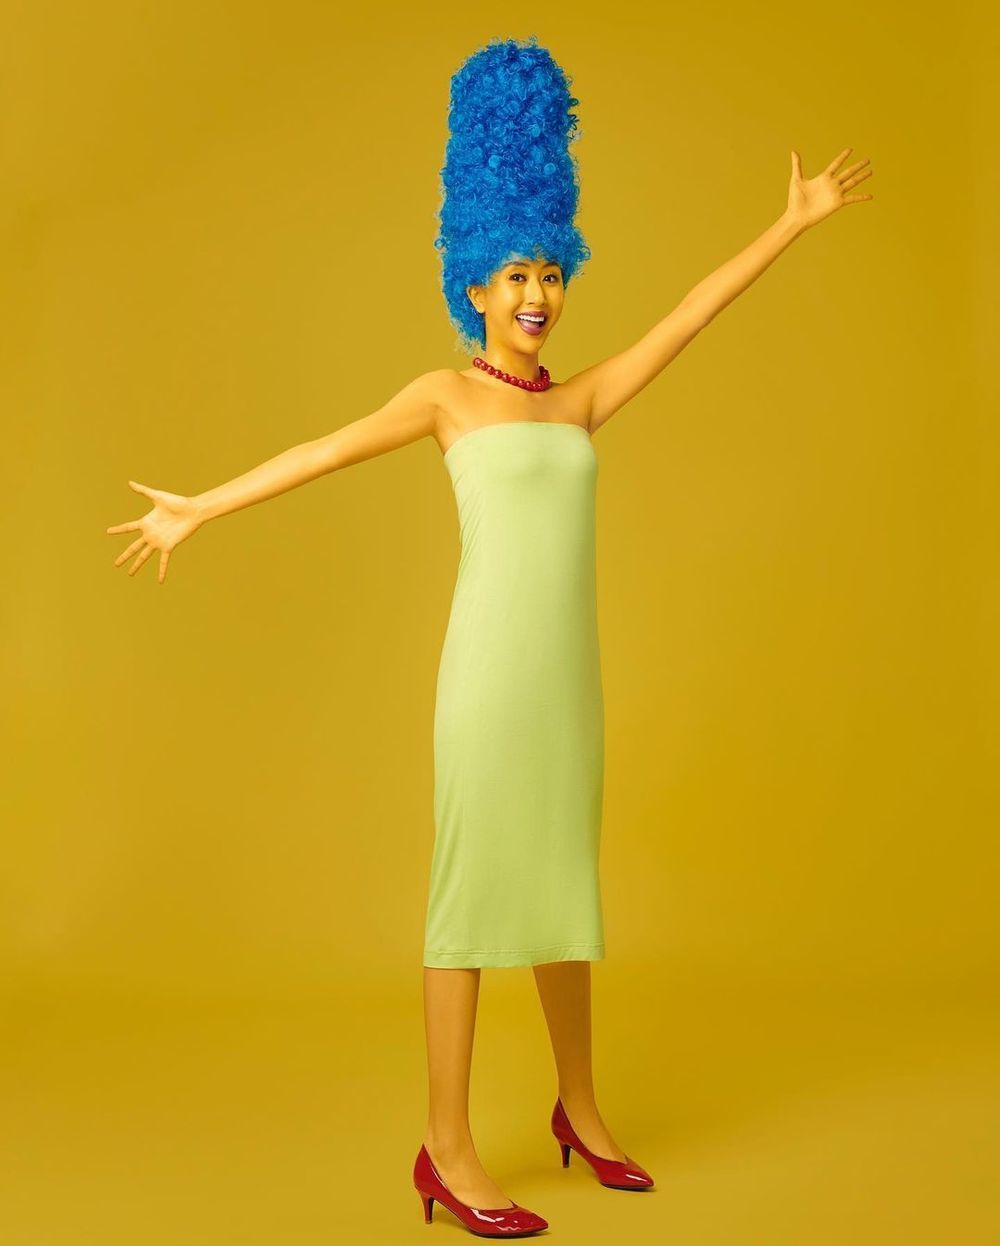  
Quỳnh Anh Shyn cosplay thành nhân vật người mẹ trong phim hoạt hình "Gia đình Simpson", cô nổi bật với mái tóc xanh dương và chiếc váy quây màu xanh nhạt. (Ảnh: FBNV)